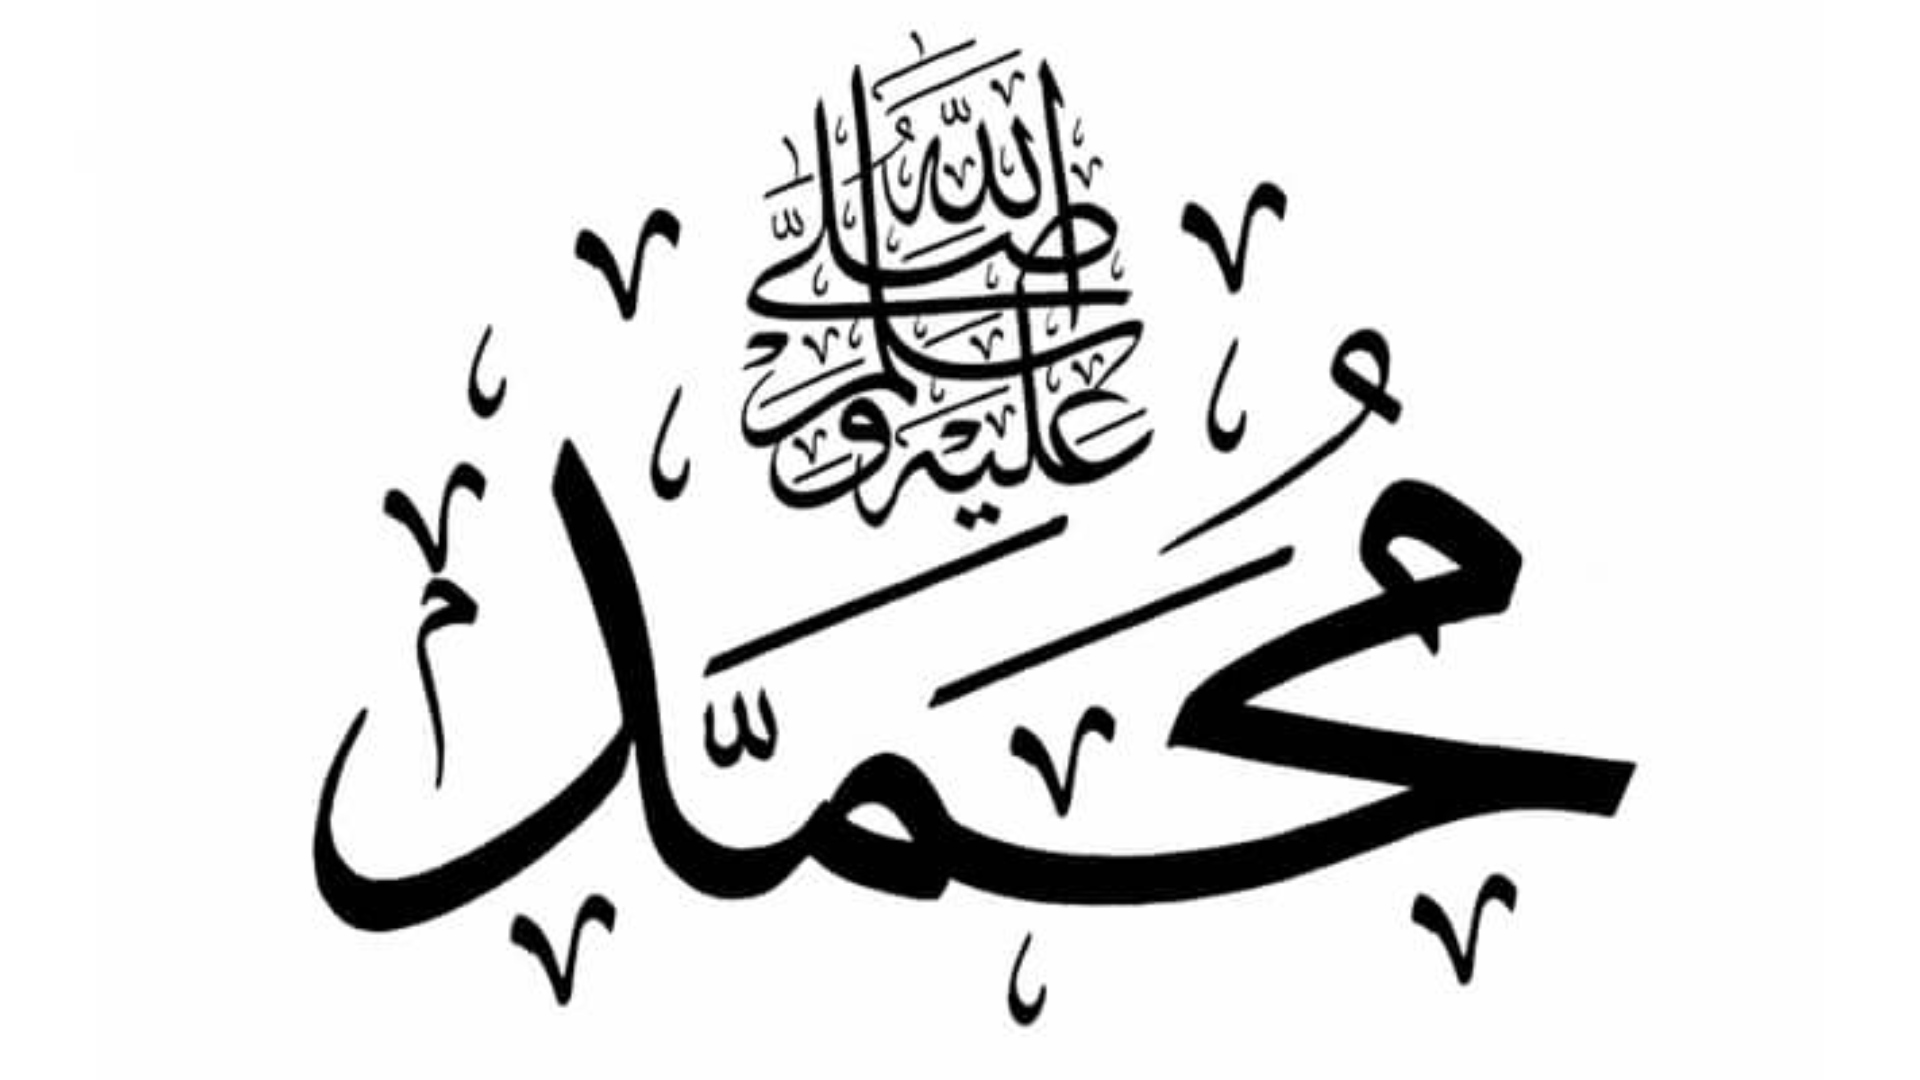 اسم النبي محمد كامل عليه الصلاة والسلام